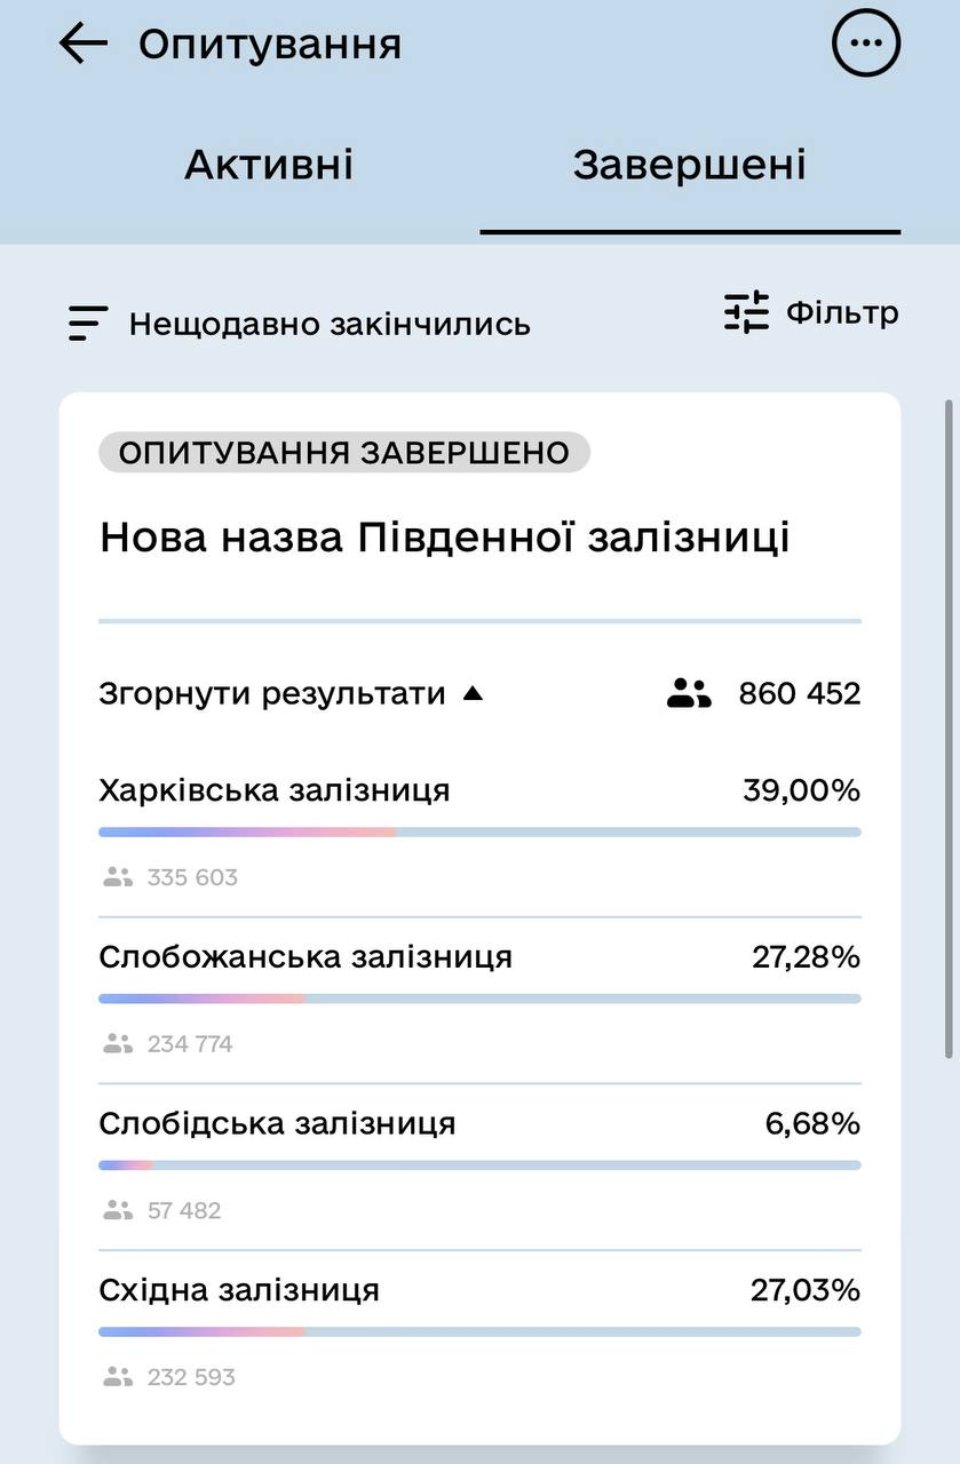 «Харківська» замість «Південна»: результати голосування за нову назву залізниці